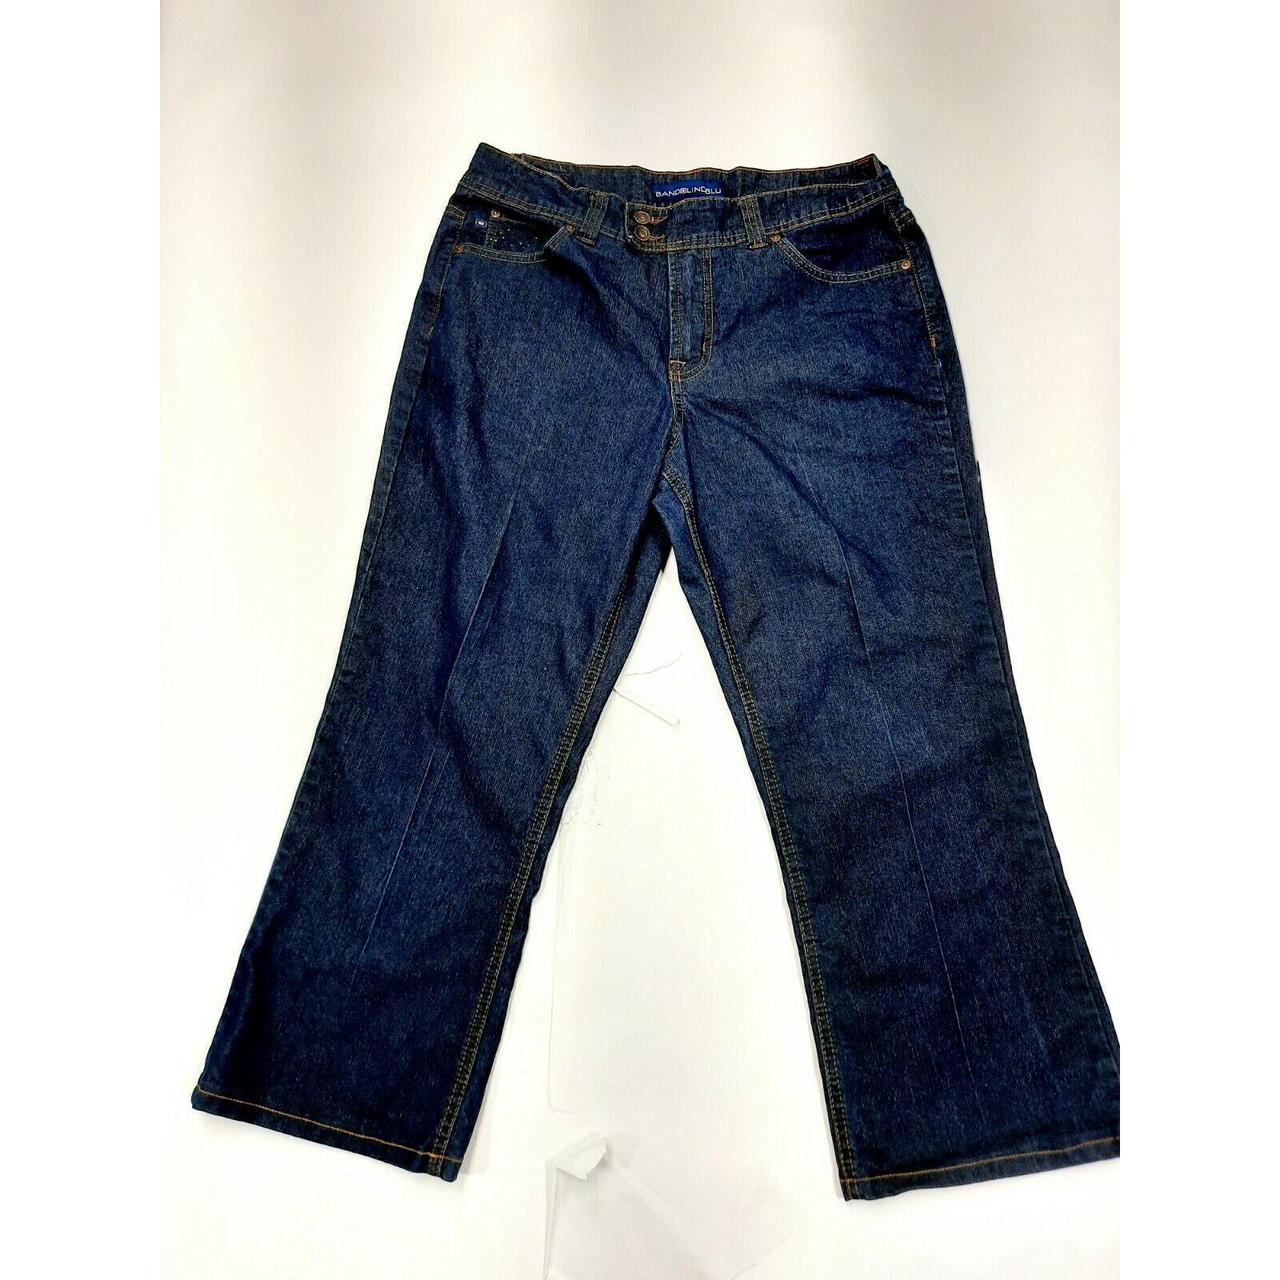 Bandolino Blue Cropped Denim Jeans Dark Wash Women’s... - Depop